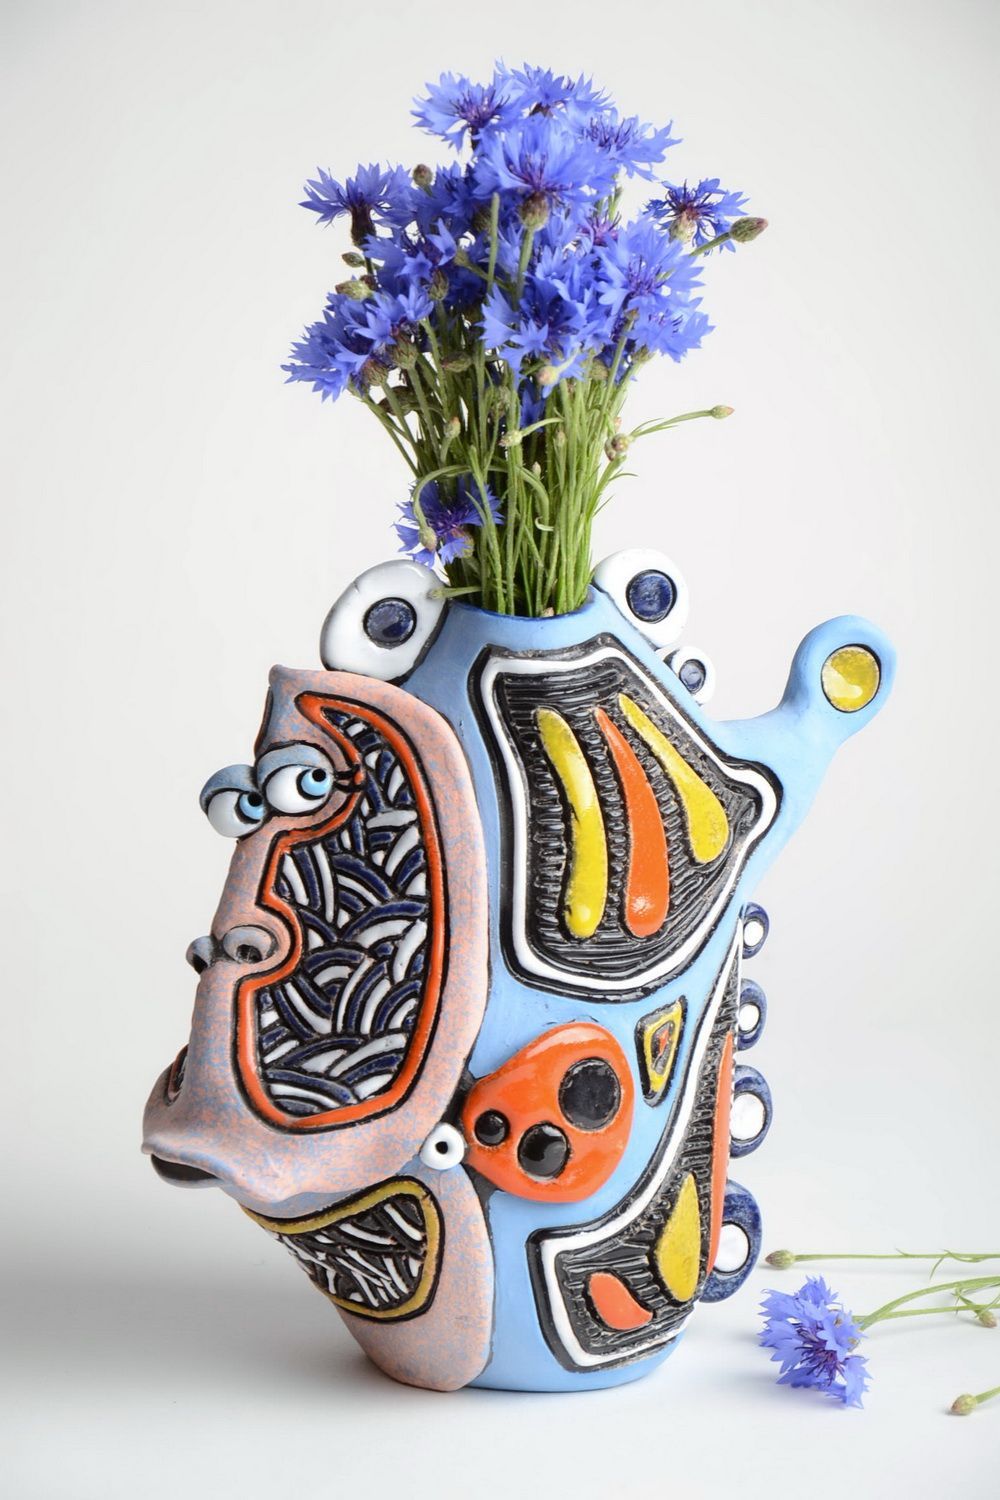 Глиняная ваза в виде рыбки ручной работы расписанная пигментами красочная 1.8 л фото 1